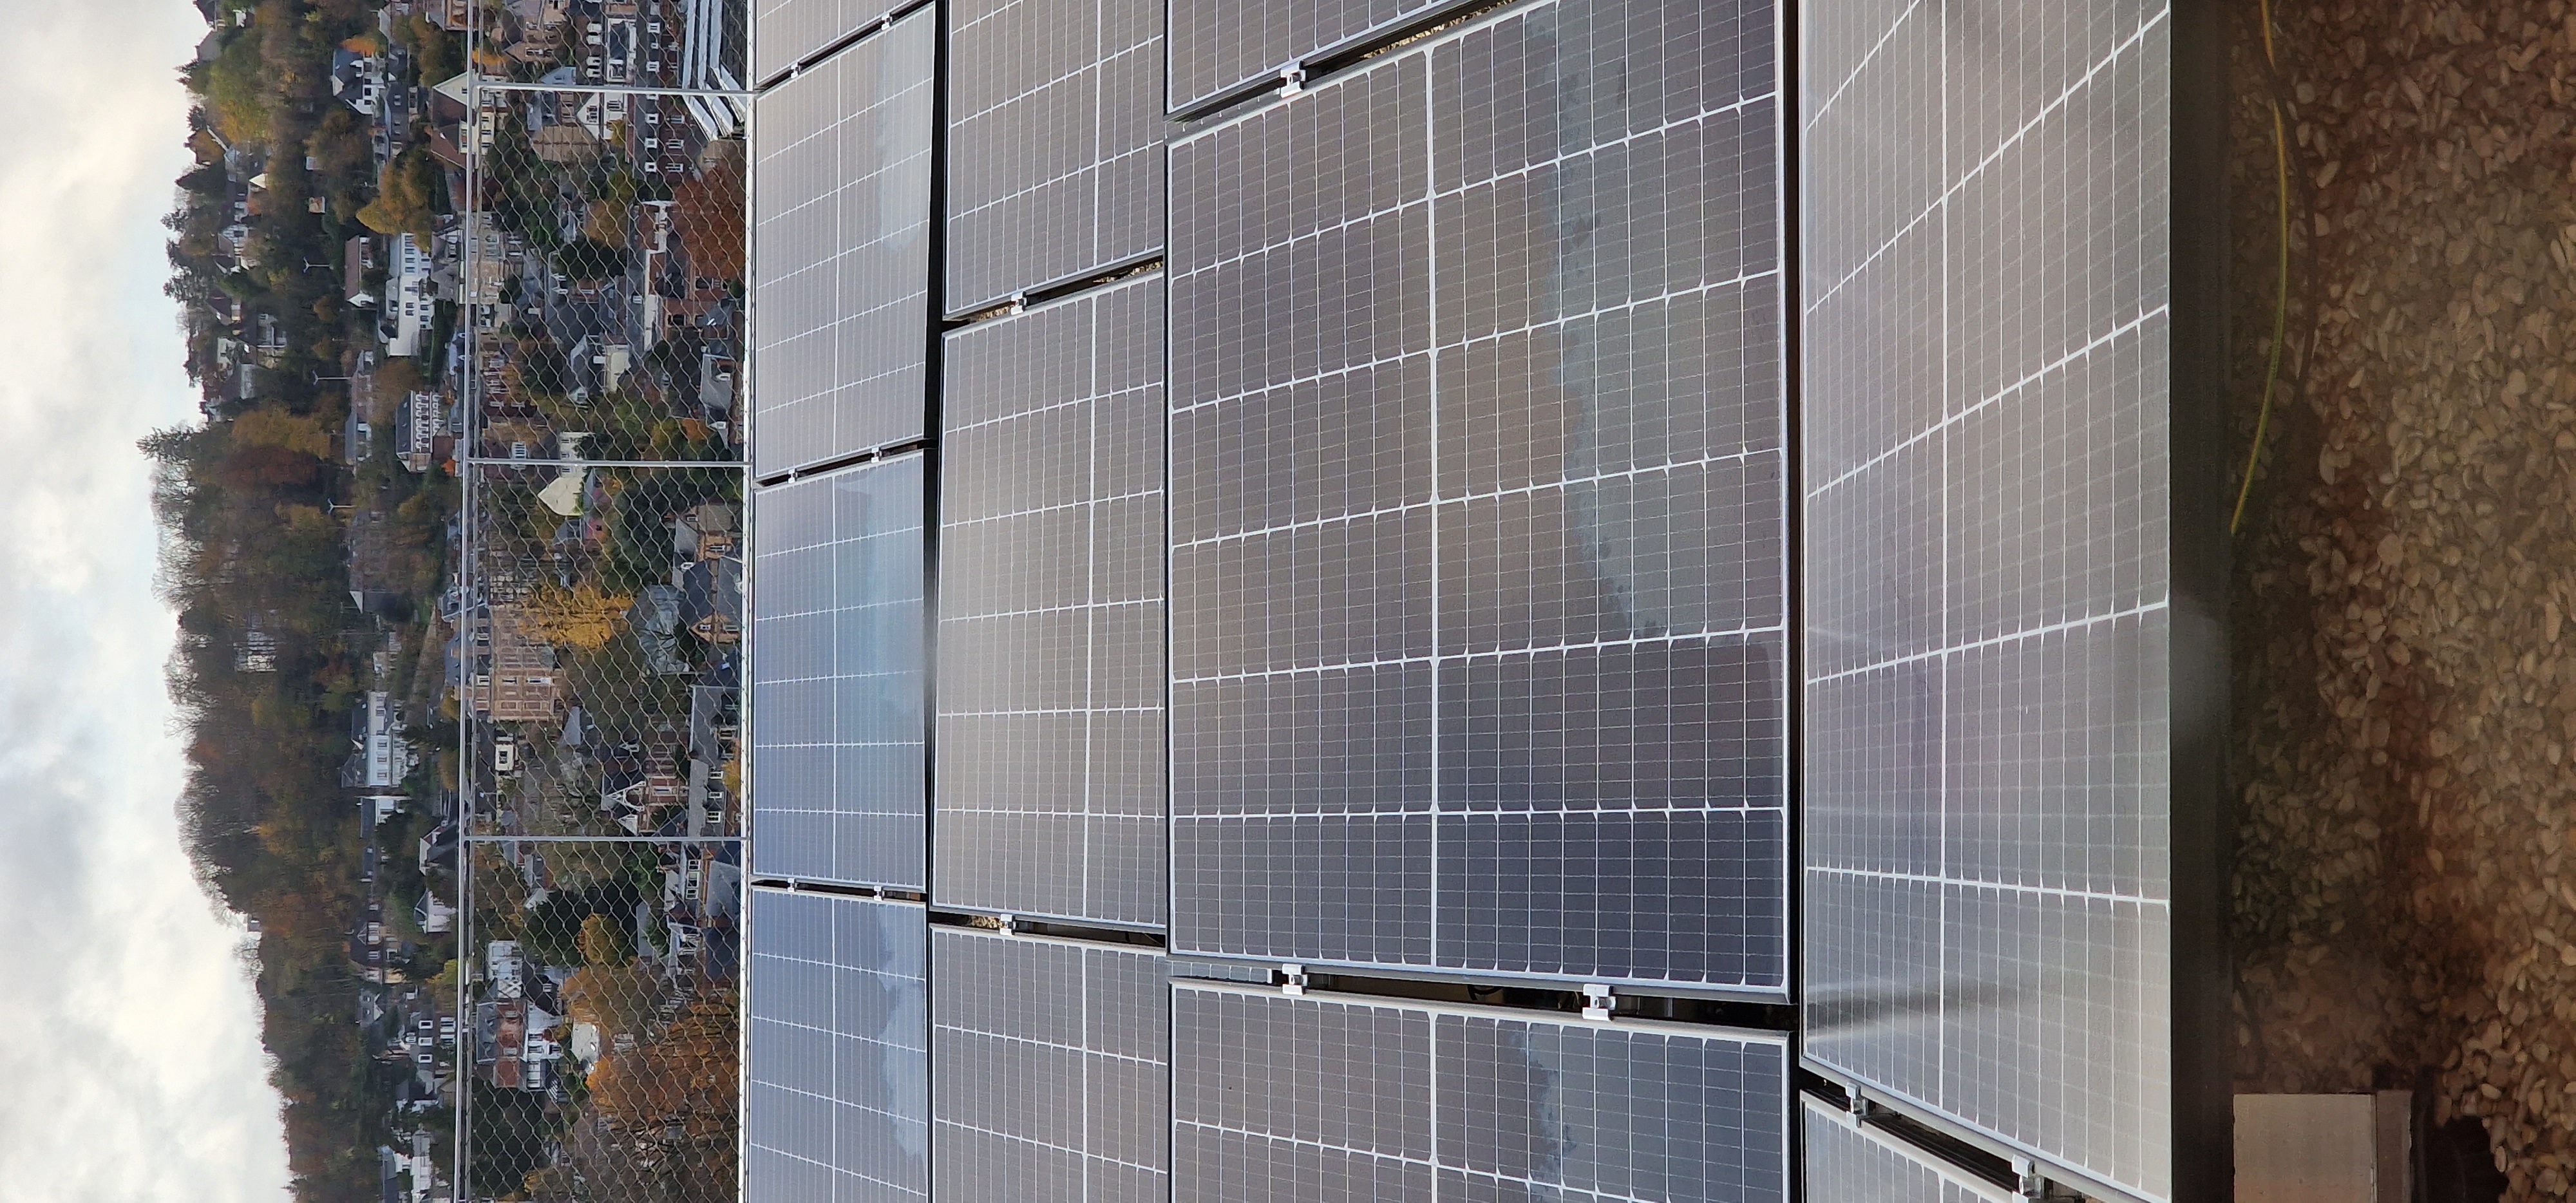 Les panneaux solaires permettront de répondre à une partie de la consommation électrique des bâtiments